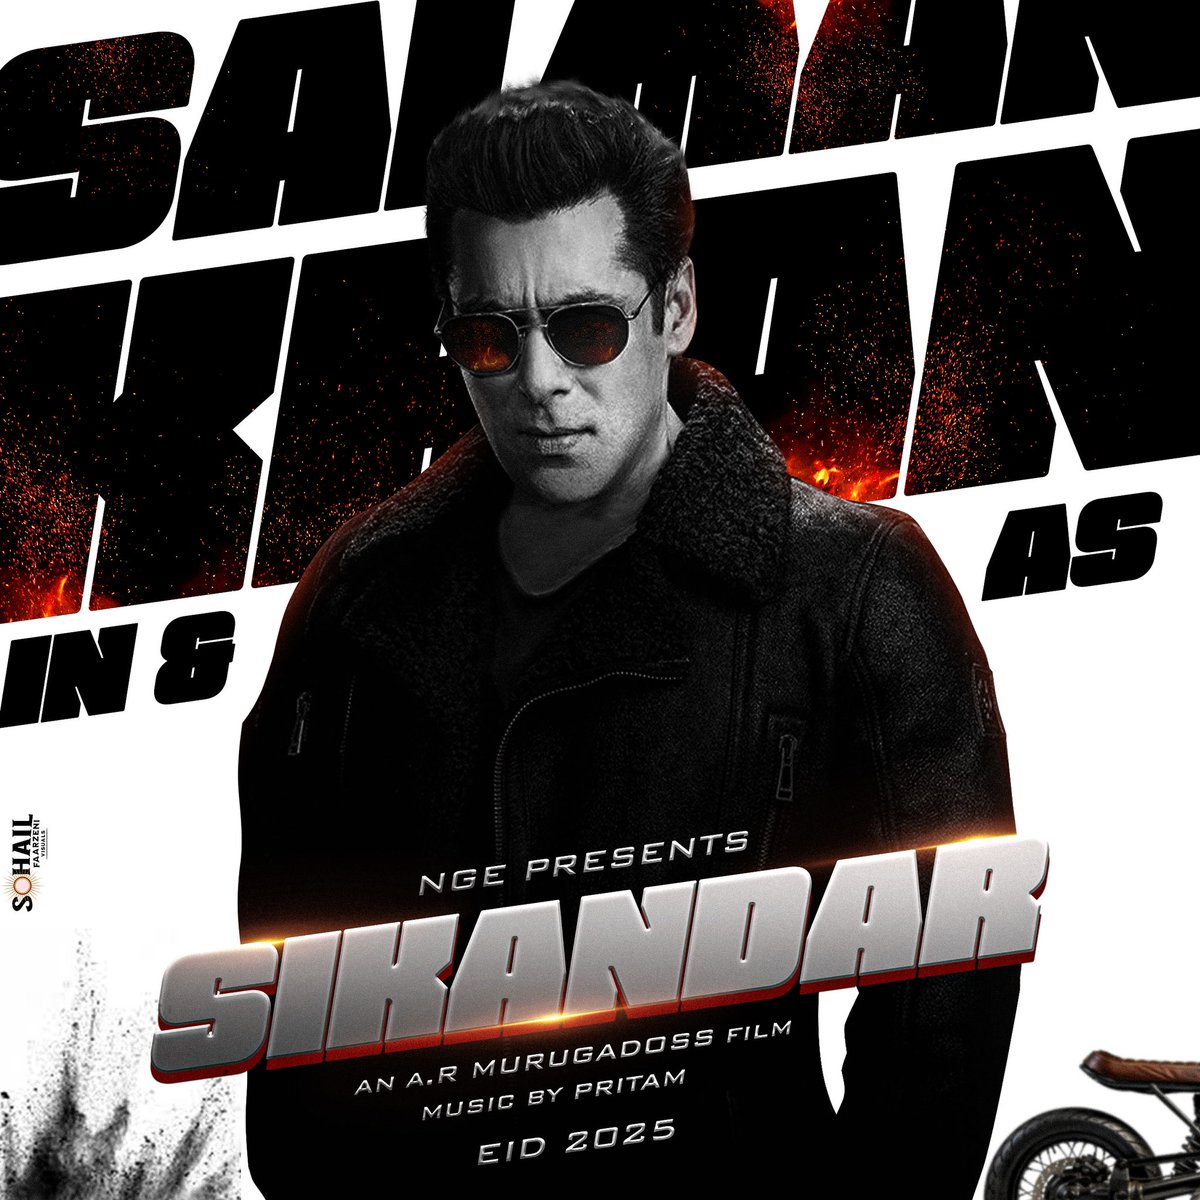 SIKANDAR 🔥

#SalmanKhan 
#Sikandar